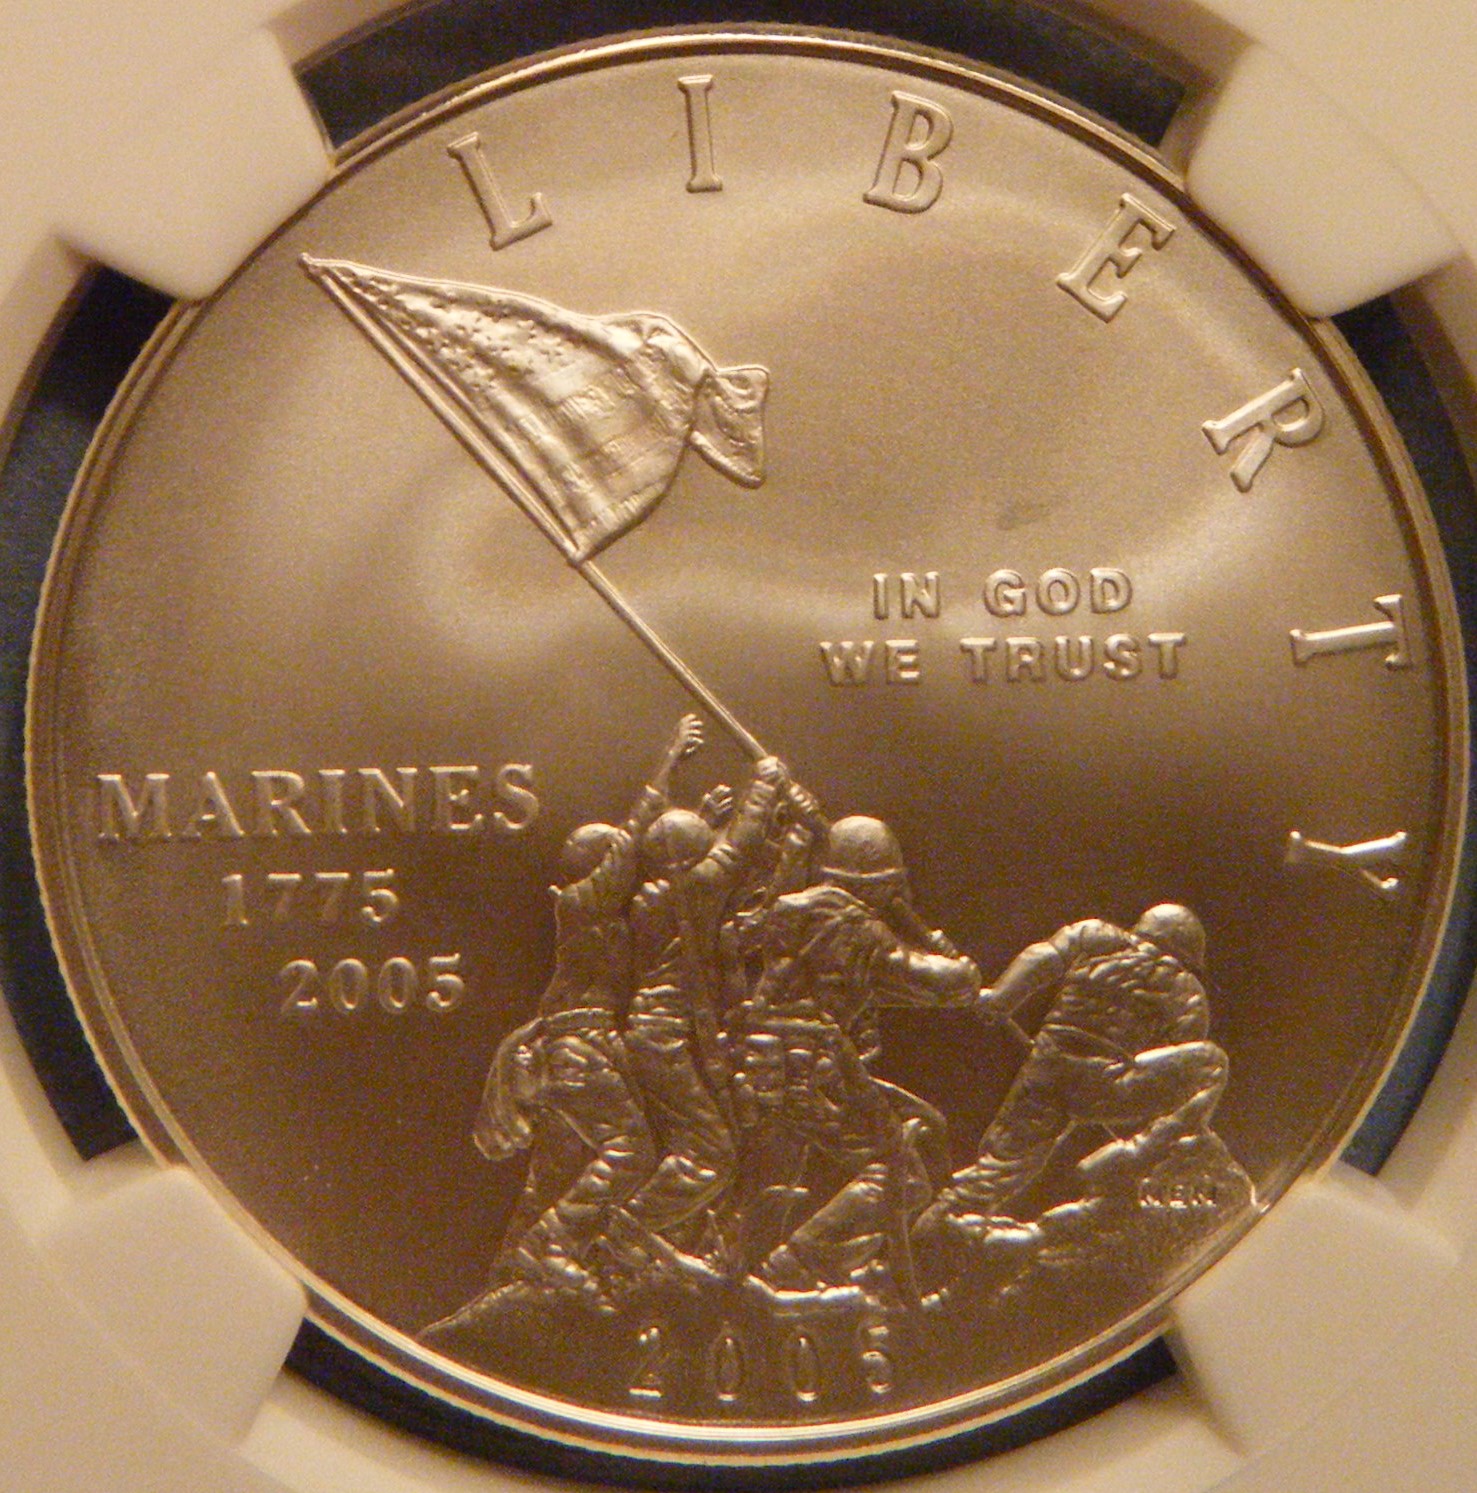 2005 Marines $1 Obv.jpg